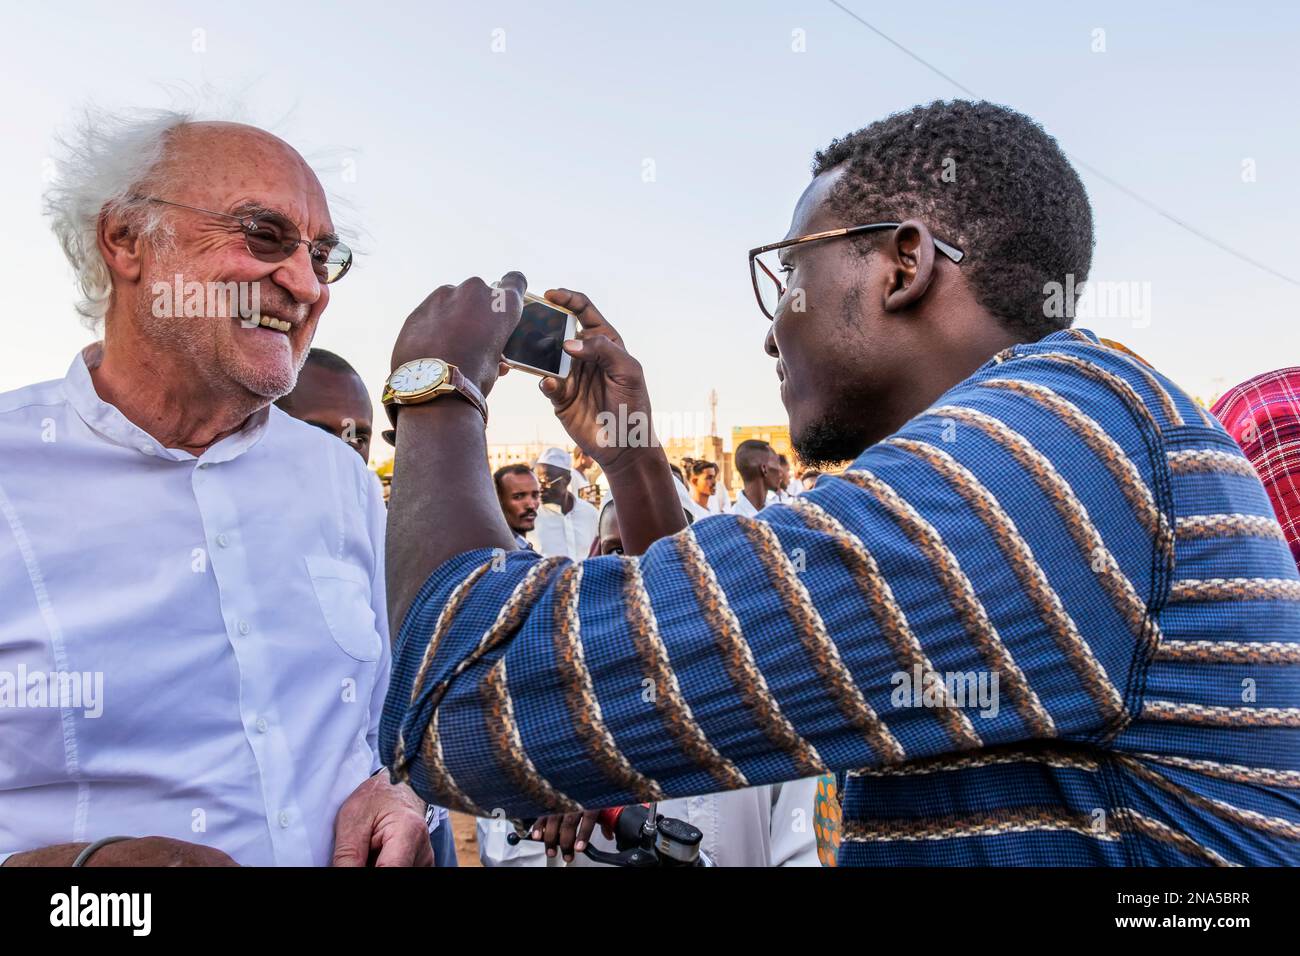 Ein Mann fotografiert einen anderen Mann bei der Dhikr-Andachtszeremonie in der Hamid el-Nil-Moschee; Omdurman, Khartum, Sudan Stockfoto